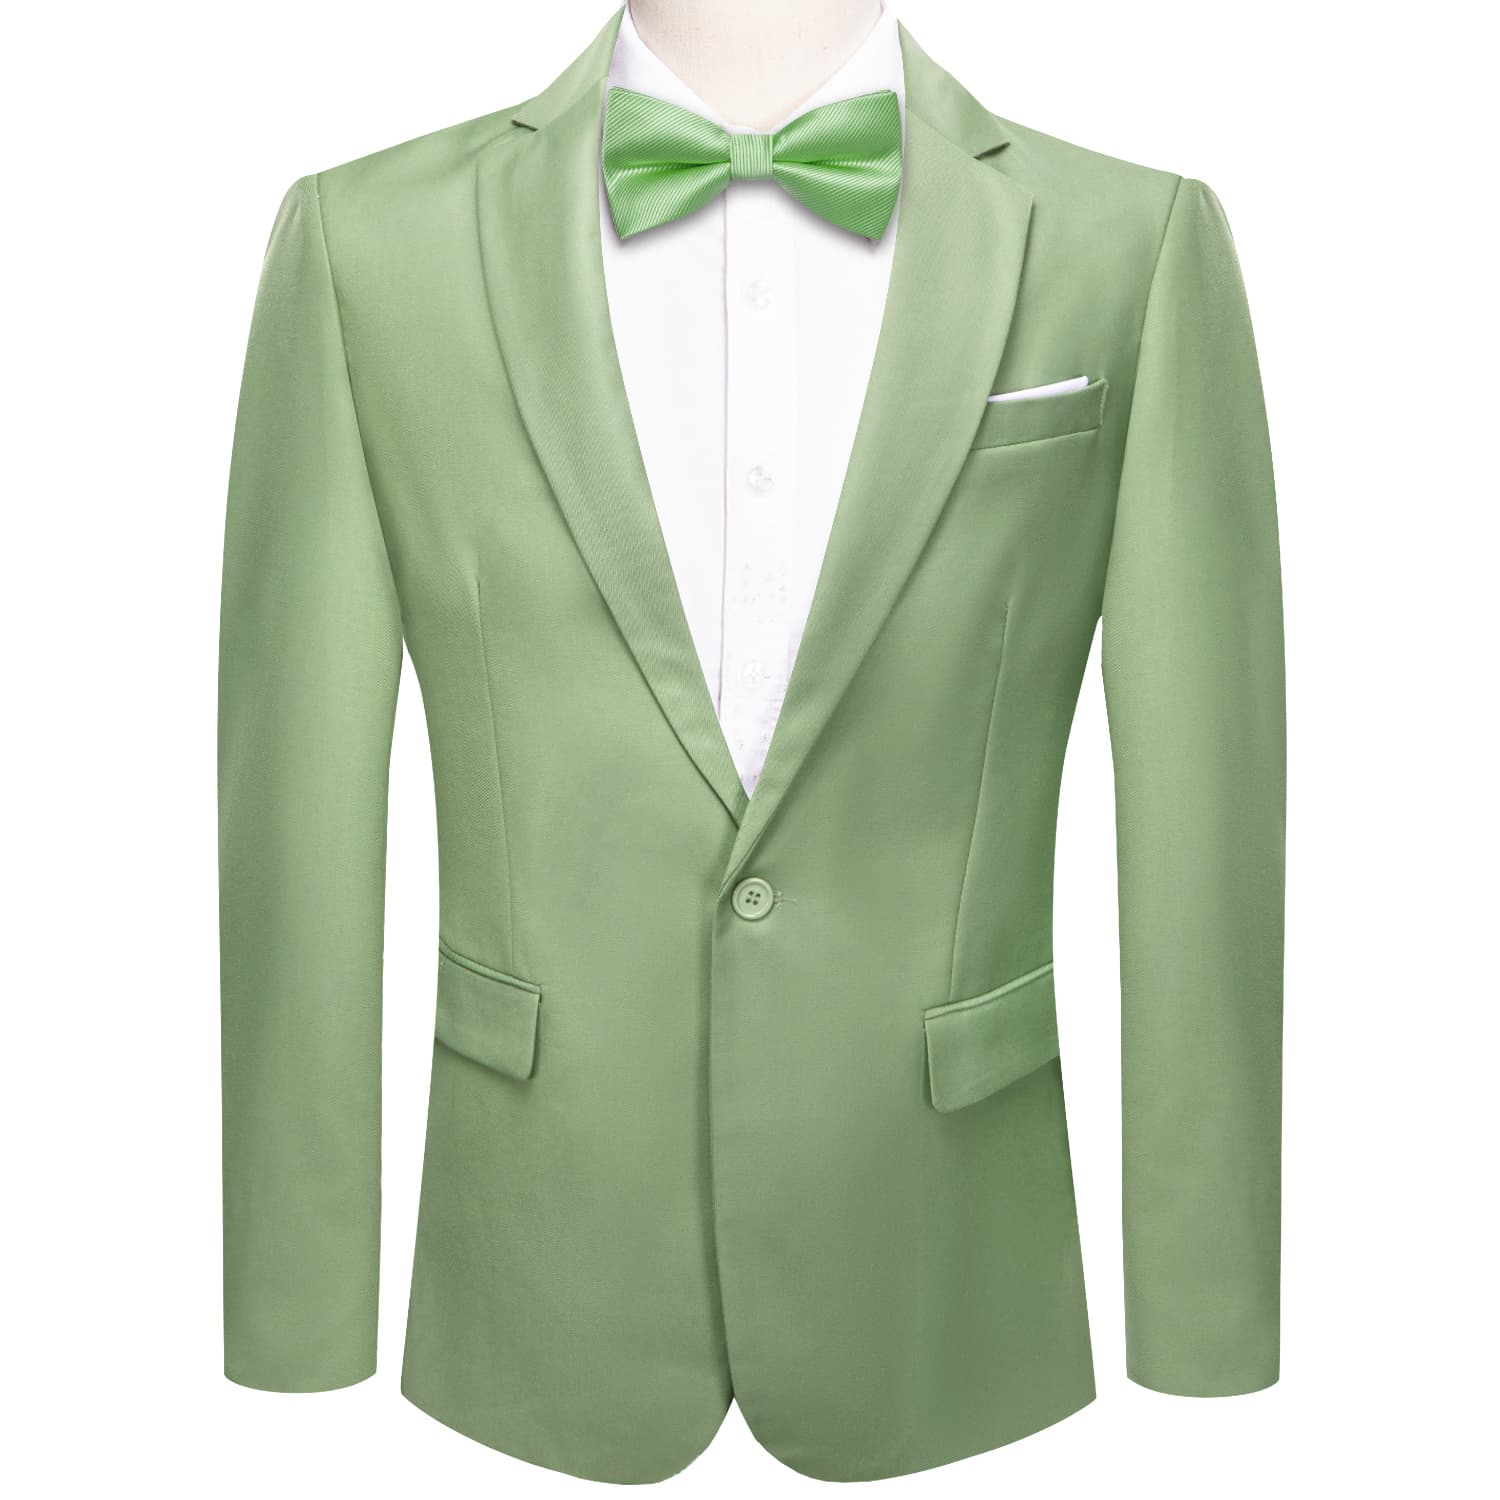  Blazer Sage Green Men's Wedding Business Solid Top Men Suit